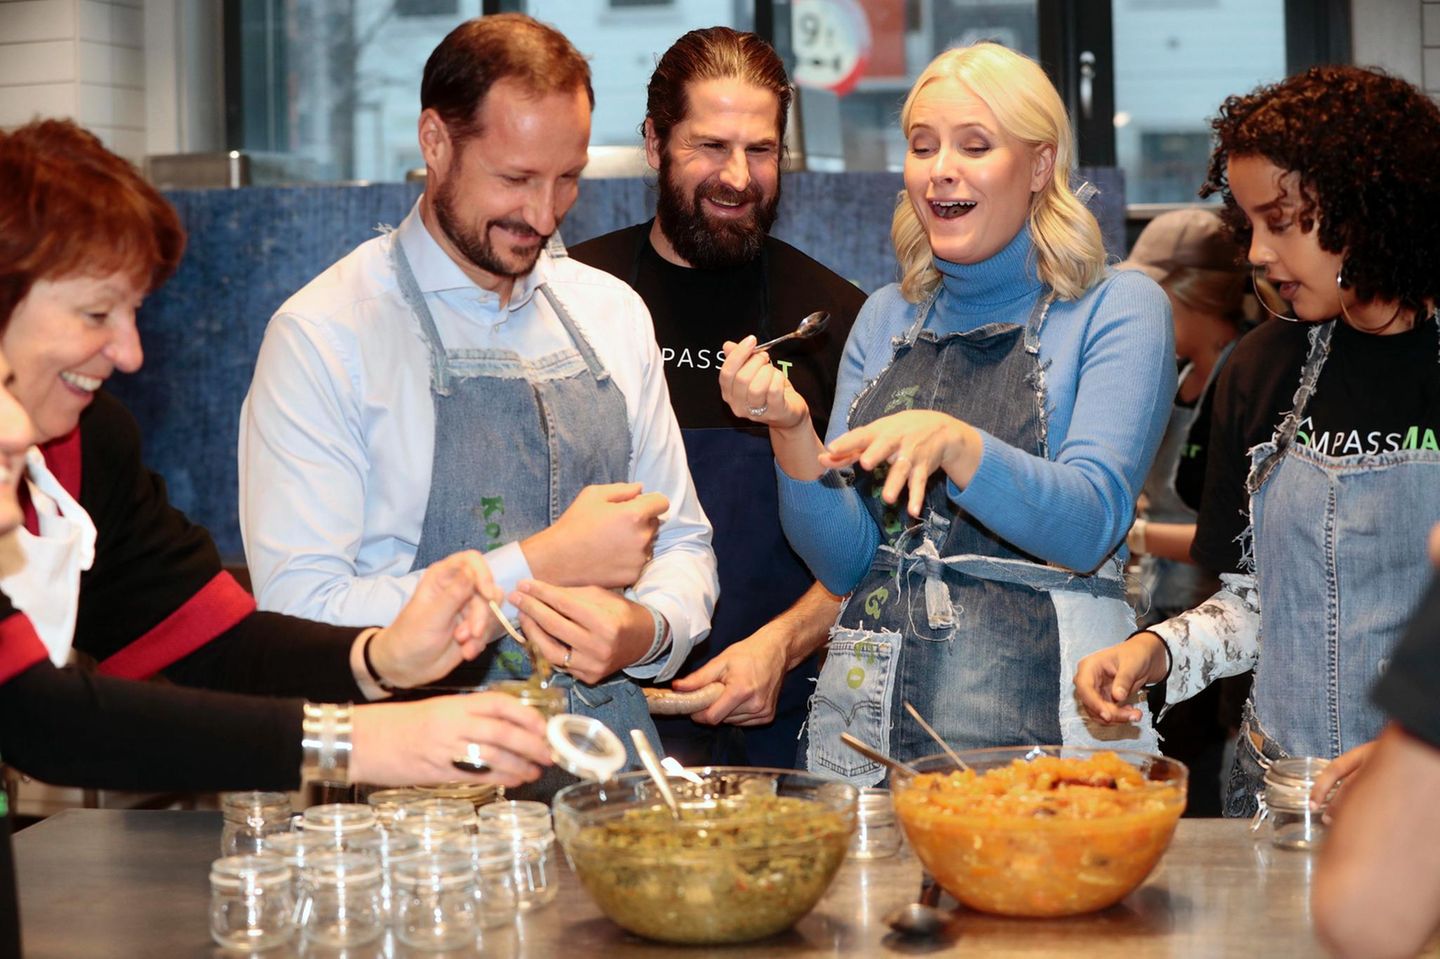 14. Dezember 2017  Bei einer Veranstaltung zum Thema "Überschüssiges Essen" können Prinzessin Mette Marit und Prinz Haakon diverse Dinge probieren. Eine Sache scheint Norwegens Kronprinzessin nicht zu munden - oder doch besonders gut?